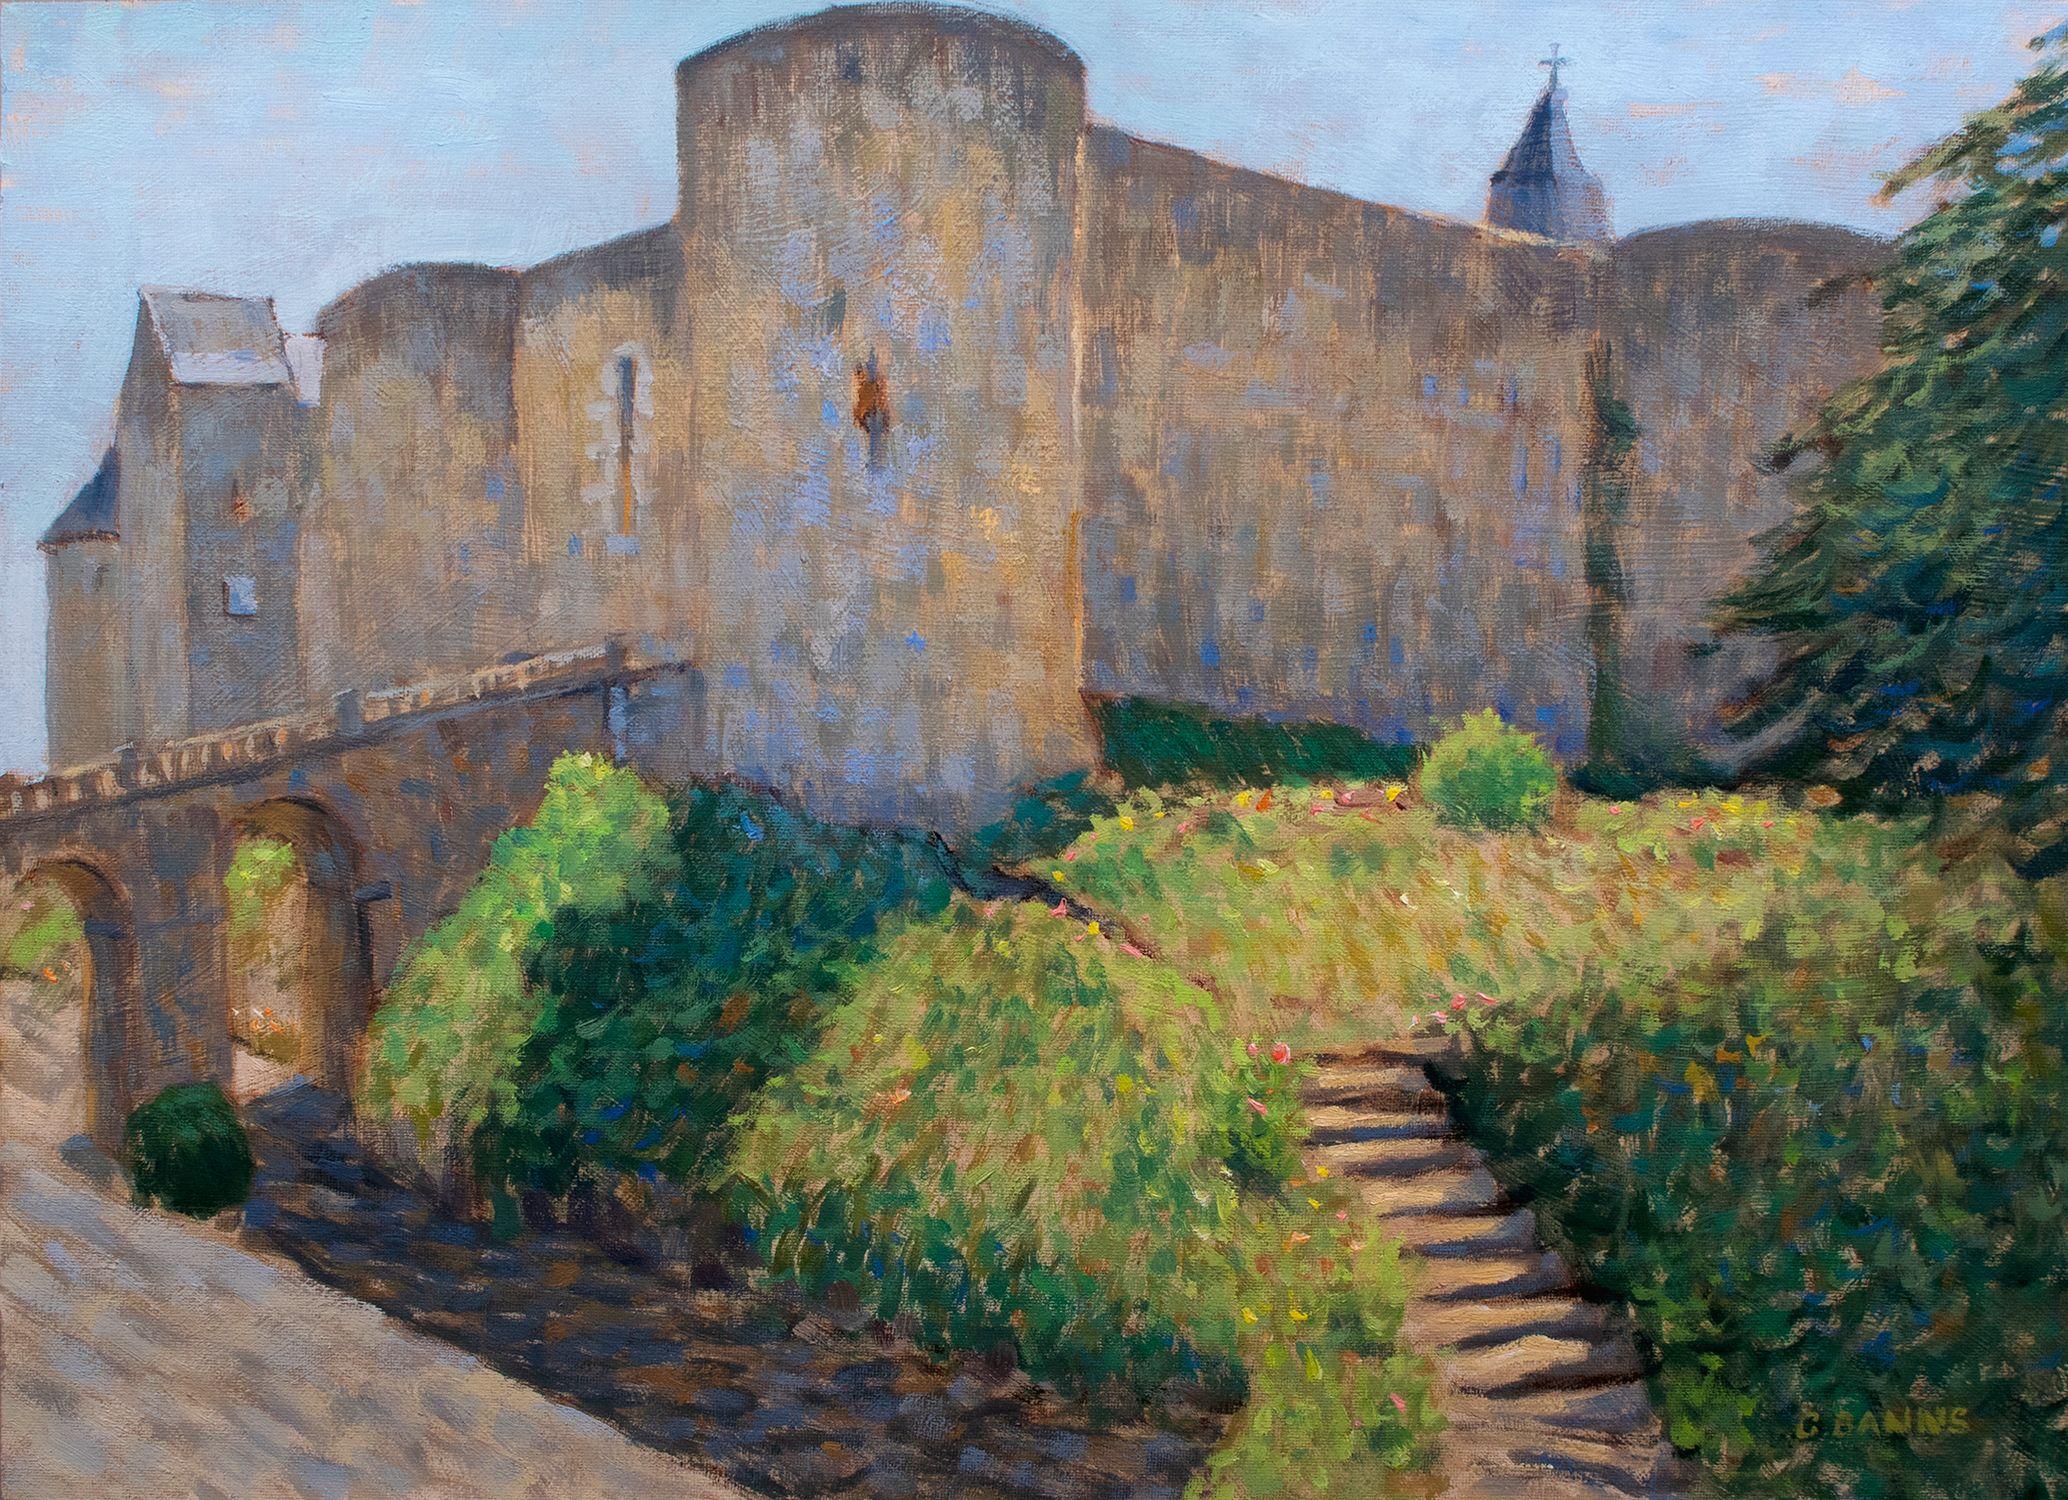 Forteresse médiévale, château de Luynes, vallée de la Loire, peinture à l'huile sur toile - Painting de Gav Banns